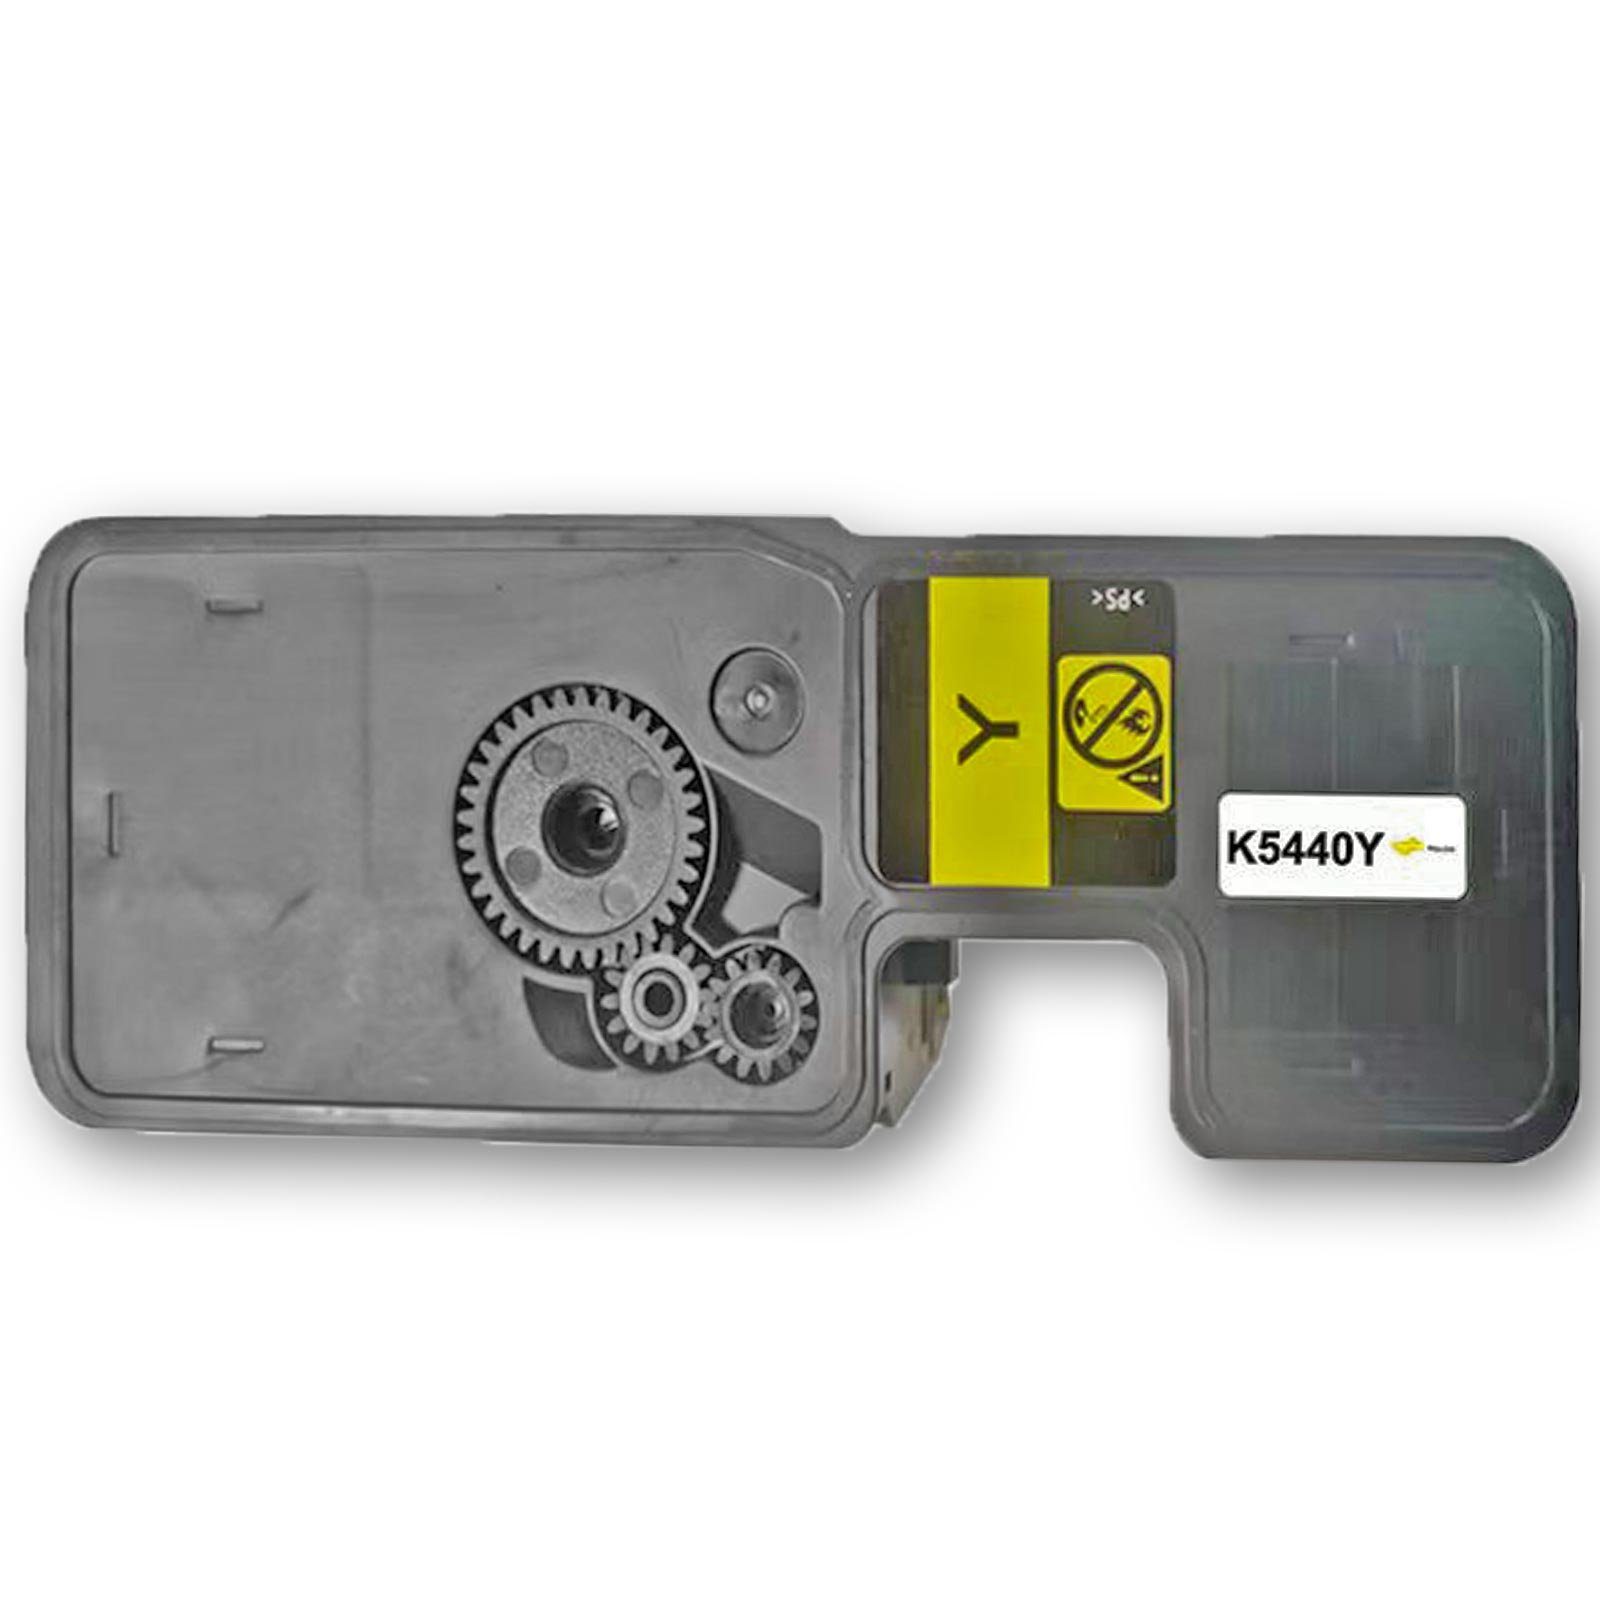 Tonerkartusche Kompatibel Kyocera TK-5440Y Gelb, Lieferumfang: 1x Tonerkassette kompatibel zu Kyocera TK-5440Y